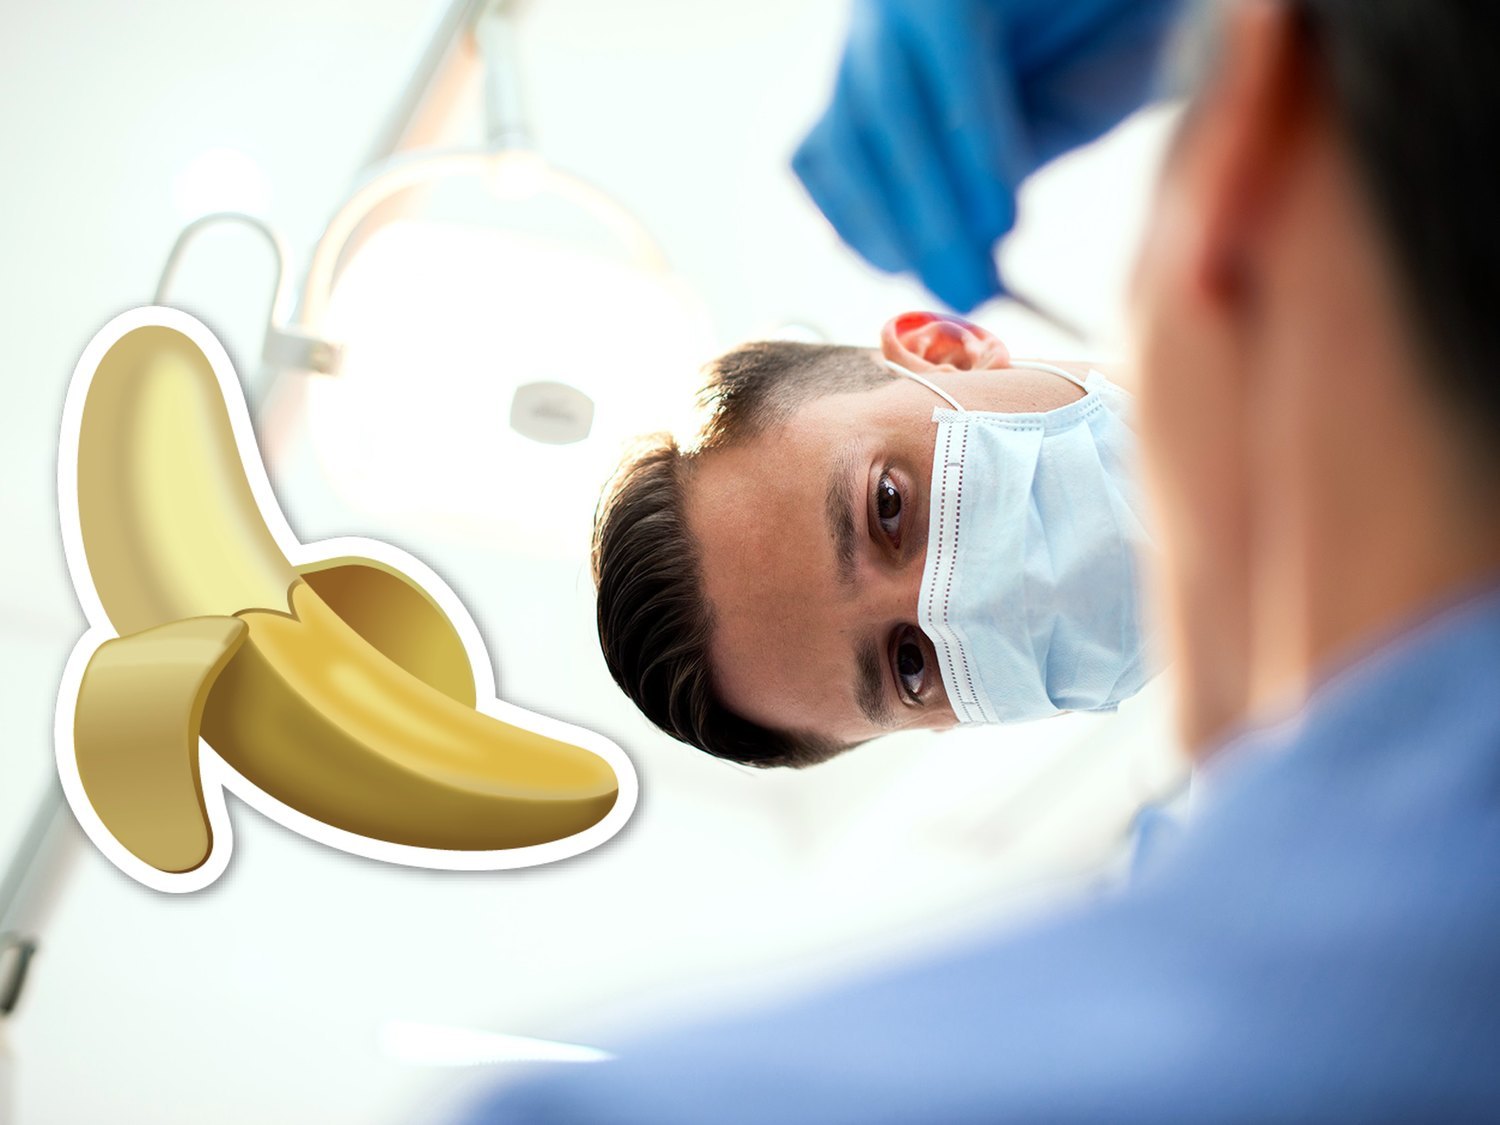 Los dentistas pueden saber de esta forma si recientemente has practicado felaciones